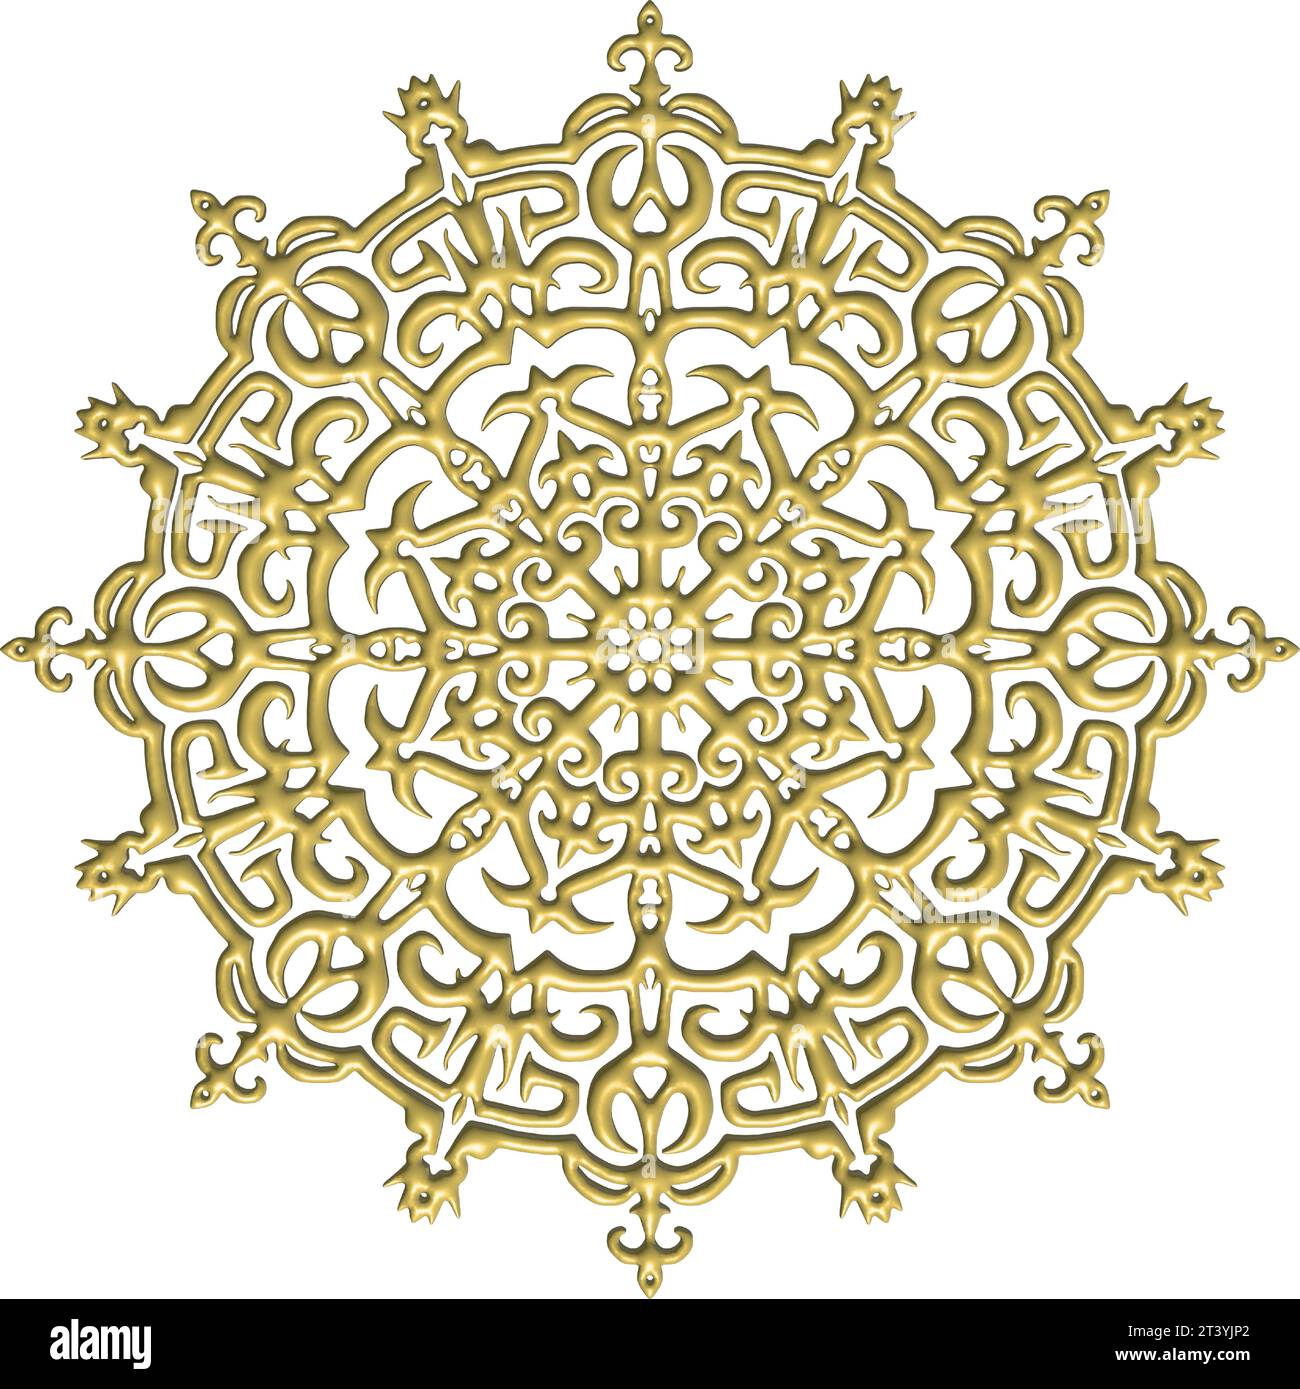 Komplexe gotische Architektur in 3D, verziert mit detaillierten Designs, beleuchtet mit strahlendem Gold und komplexen vegetativen Mustern Stock Vektor